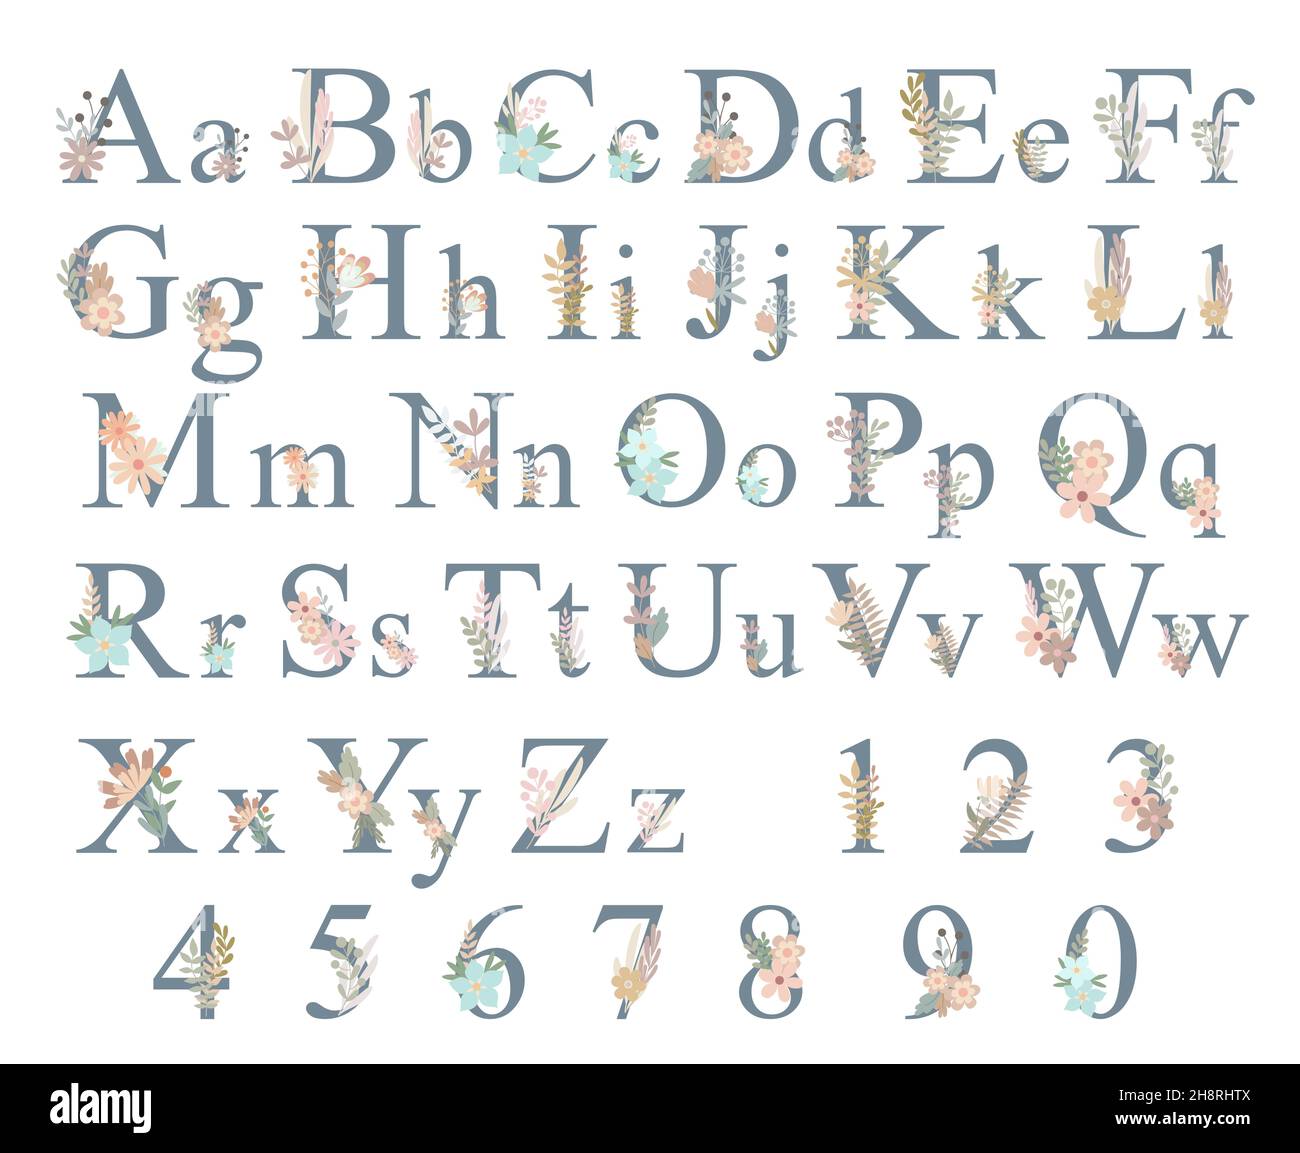 Letras del alfabeto Mayúsculas, minúsculas y números decorados con